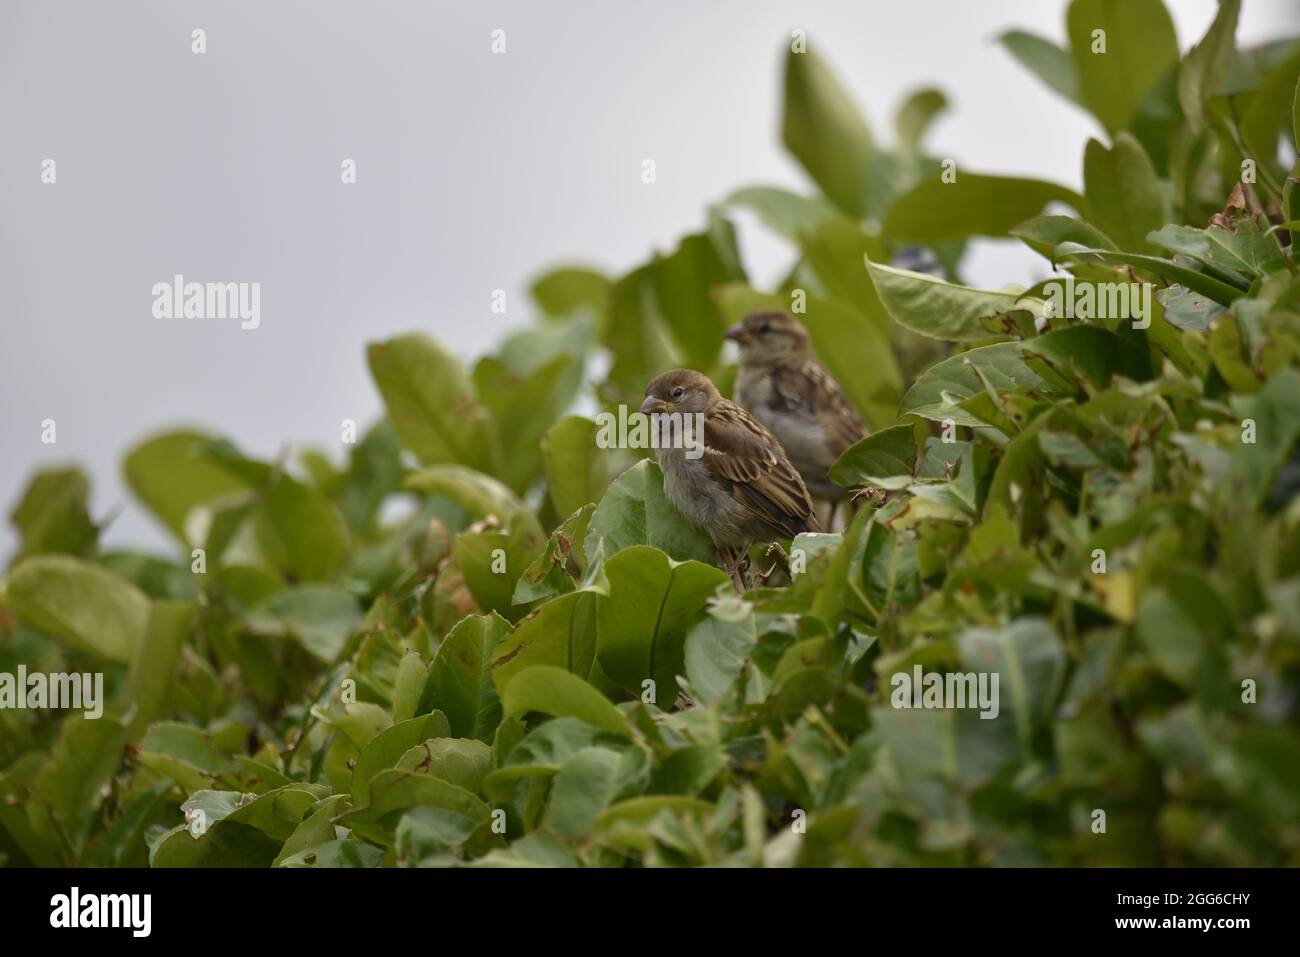 Sparrows Casa femminile (Passer domestica) in Profilo sinistro, guardando a sinistra di colpo, in un giardino in Galles in estate Foto Stock